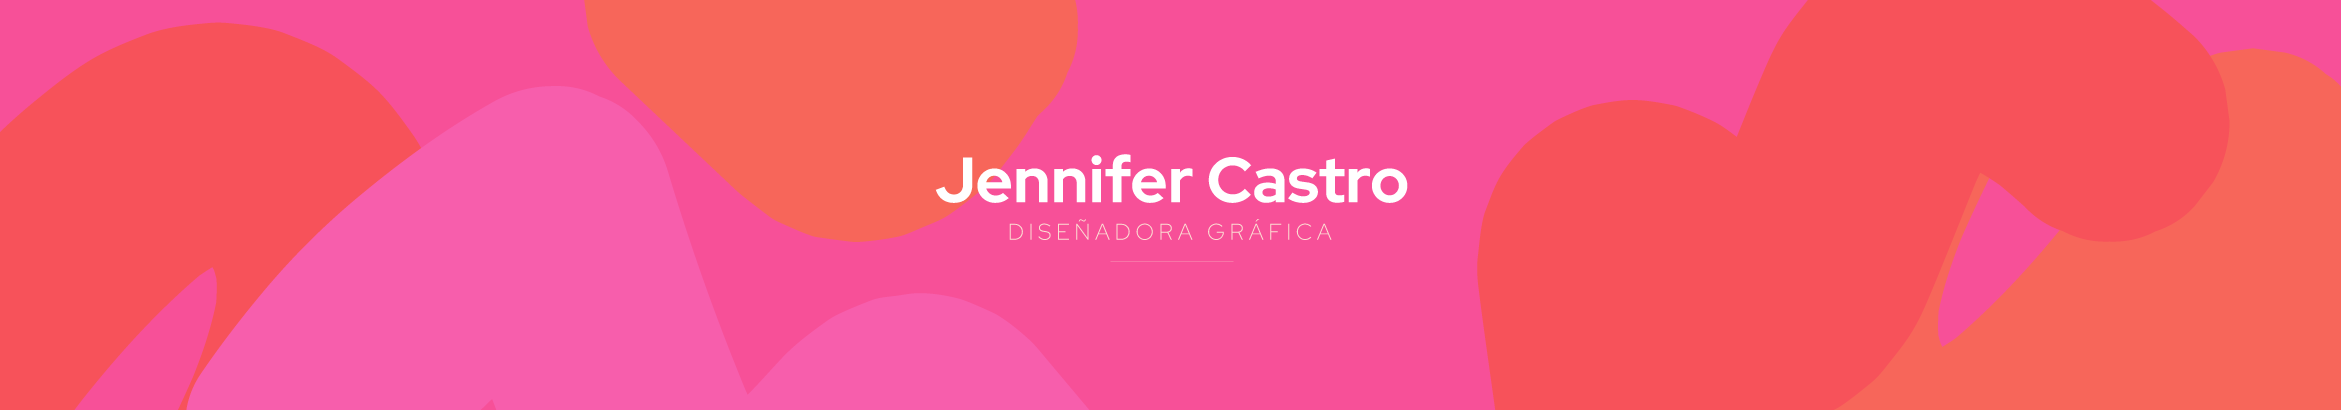 Jennifer Castro's profile banner